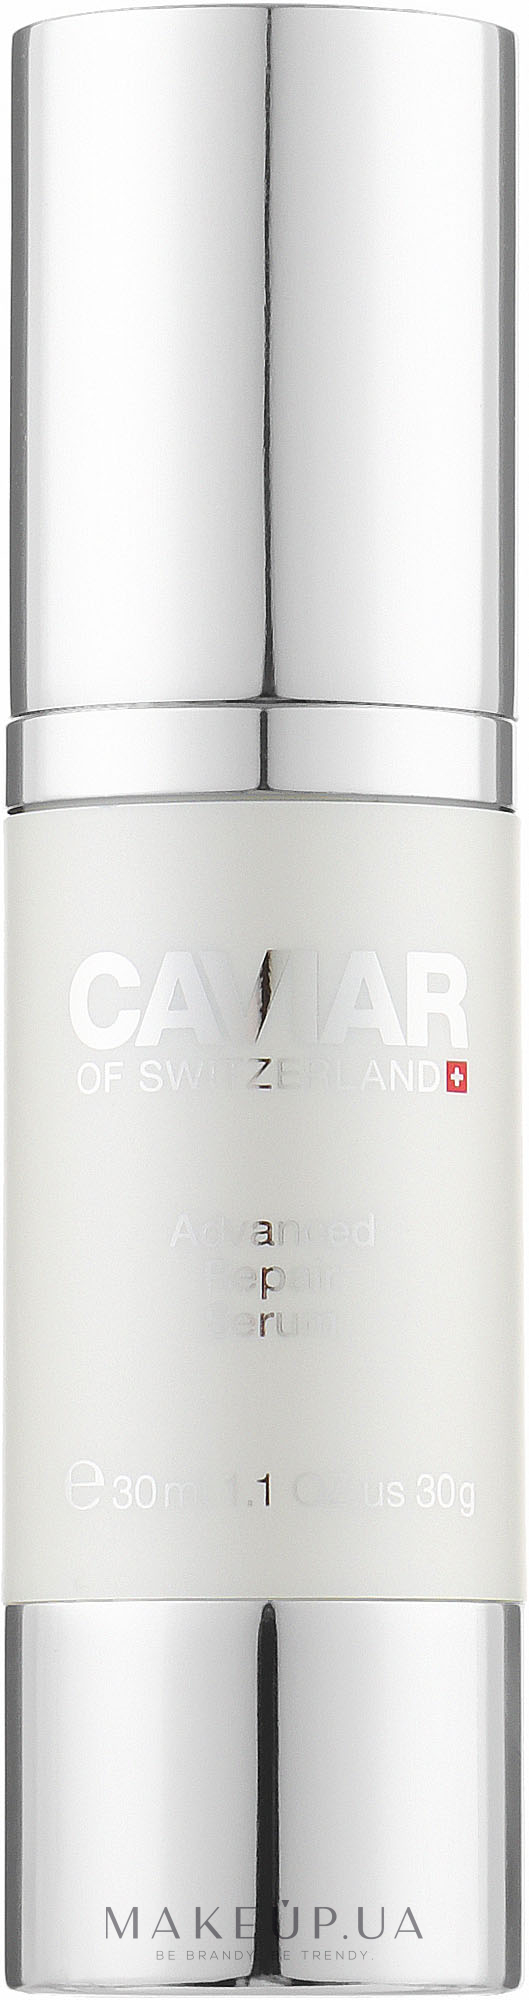 Покращена відновлювальна сироватка для обличчя - Caviar Of Switzerland Advanced Repair Serum — фото 30ml